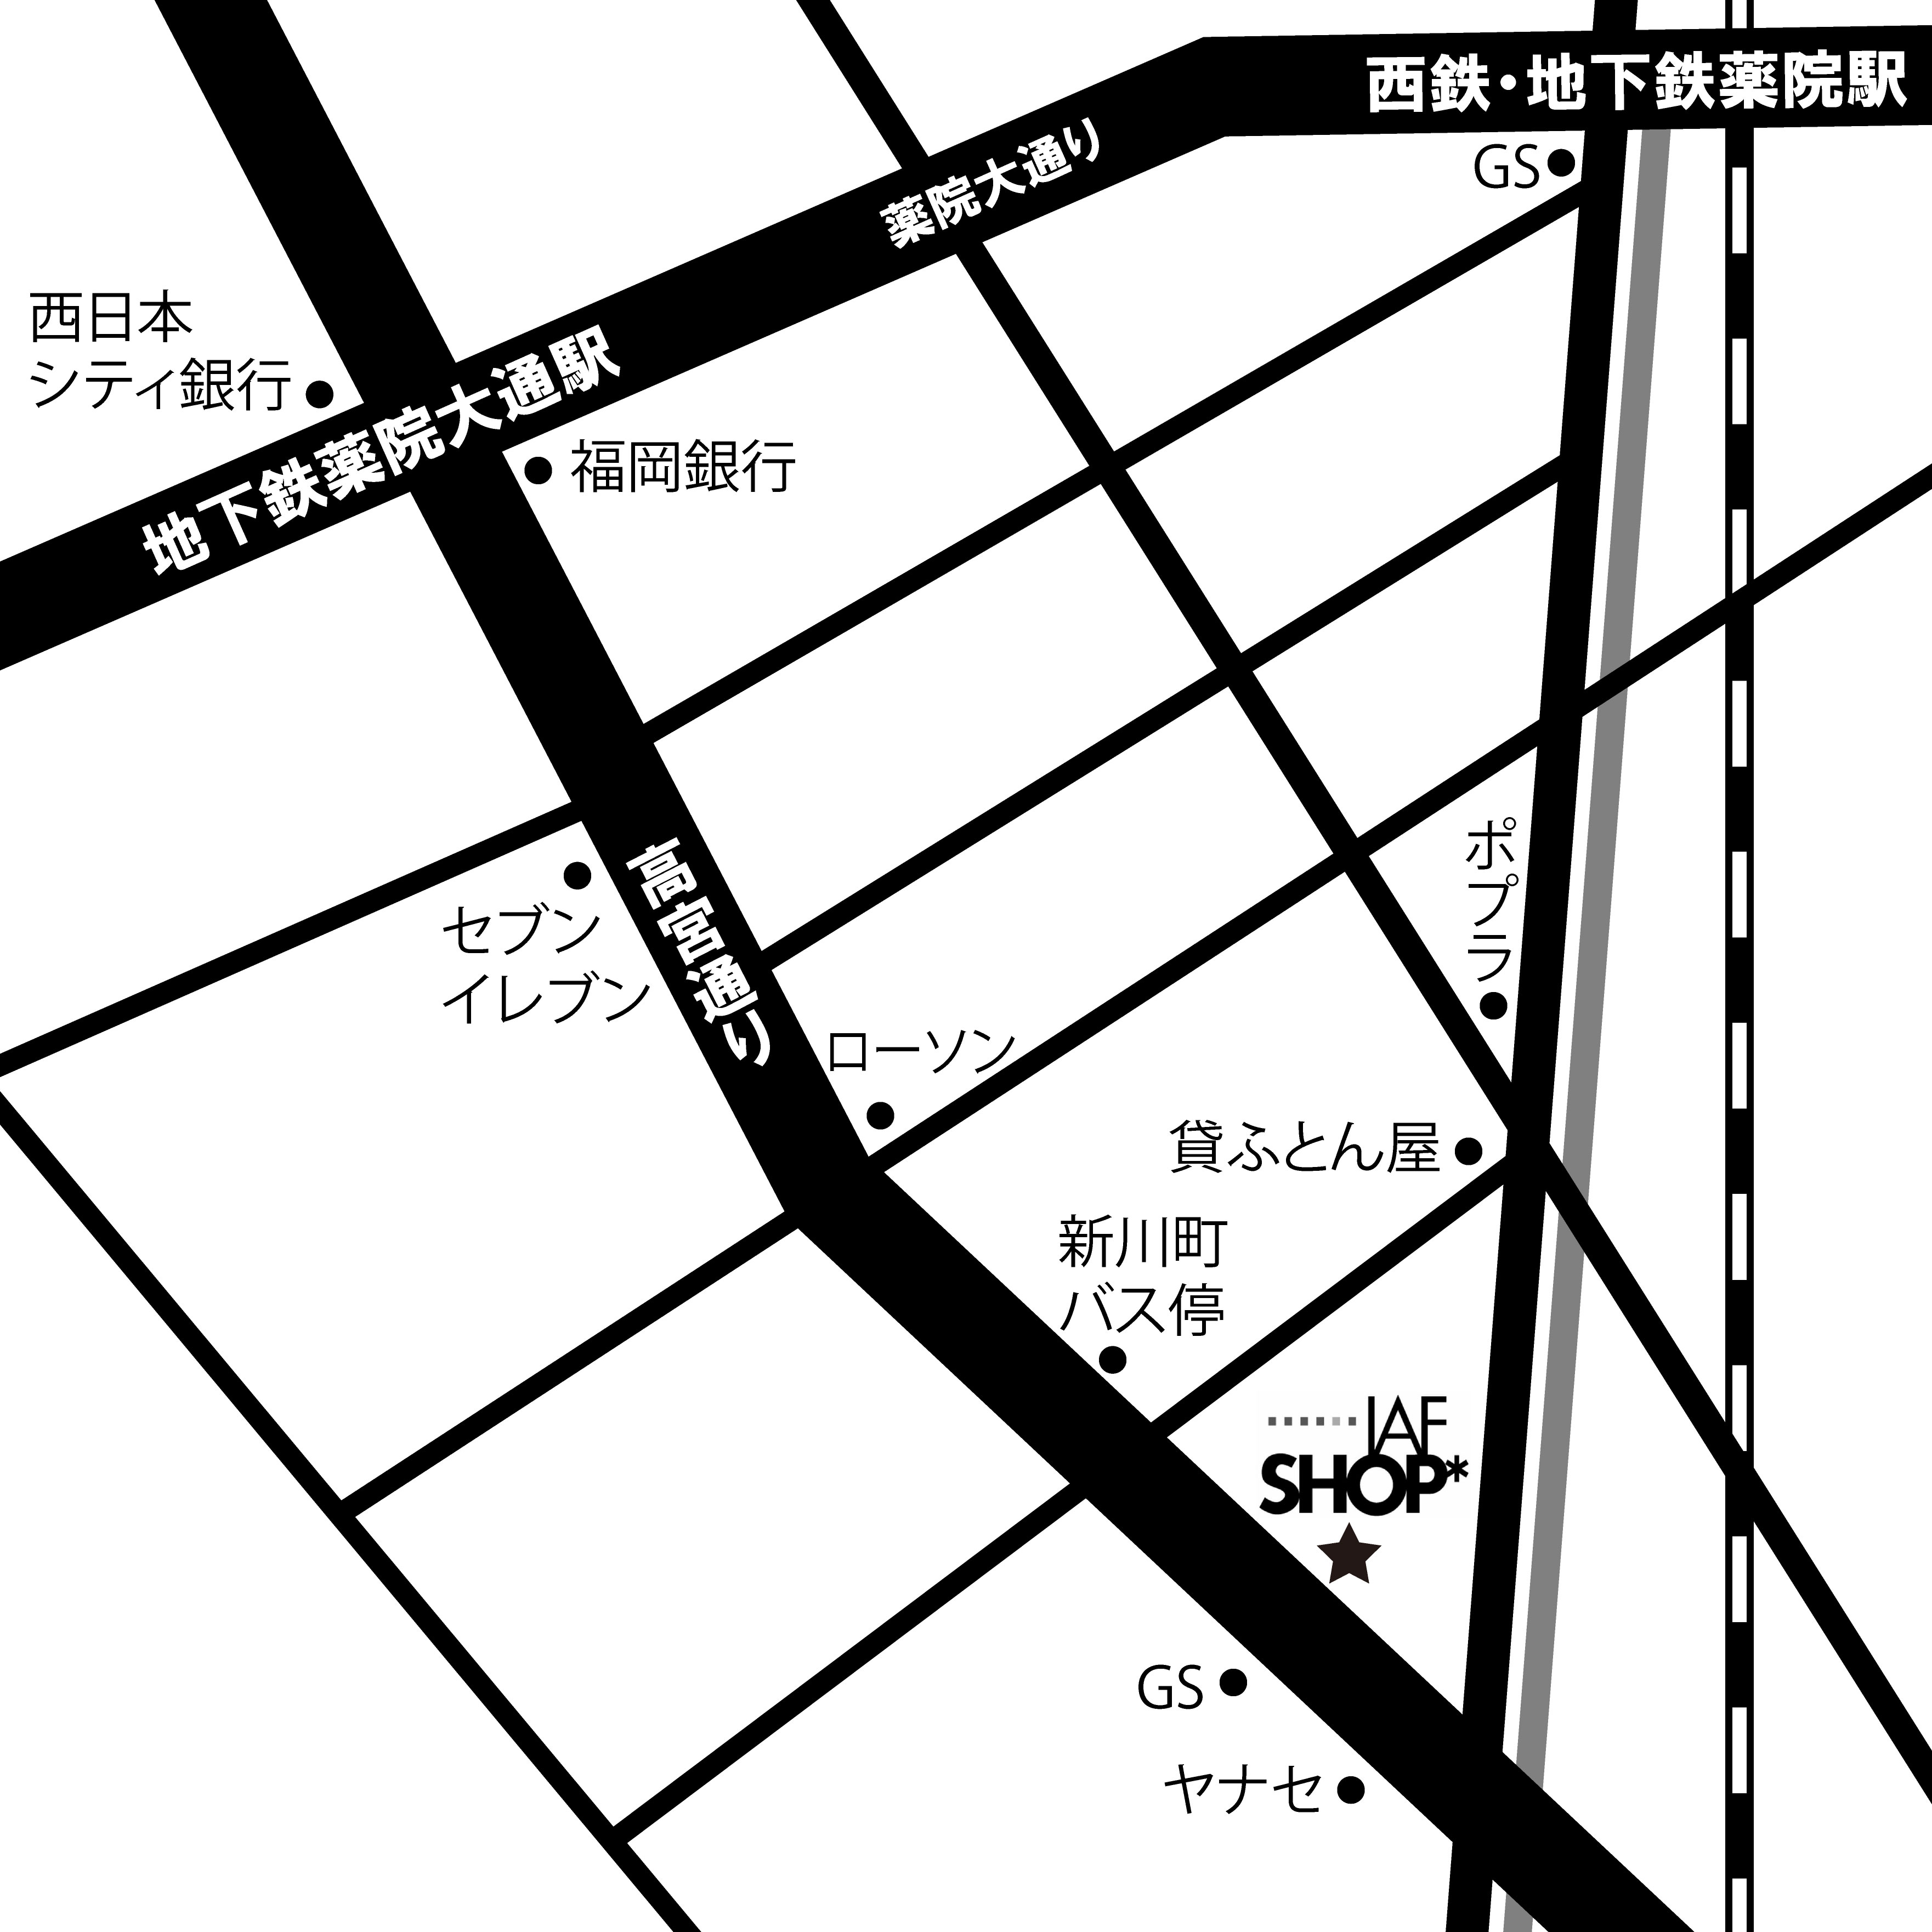 福岡ＩＡＦＳＨＯＰの地図です